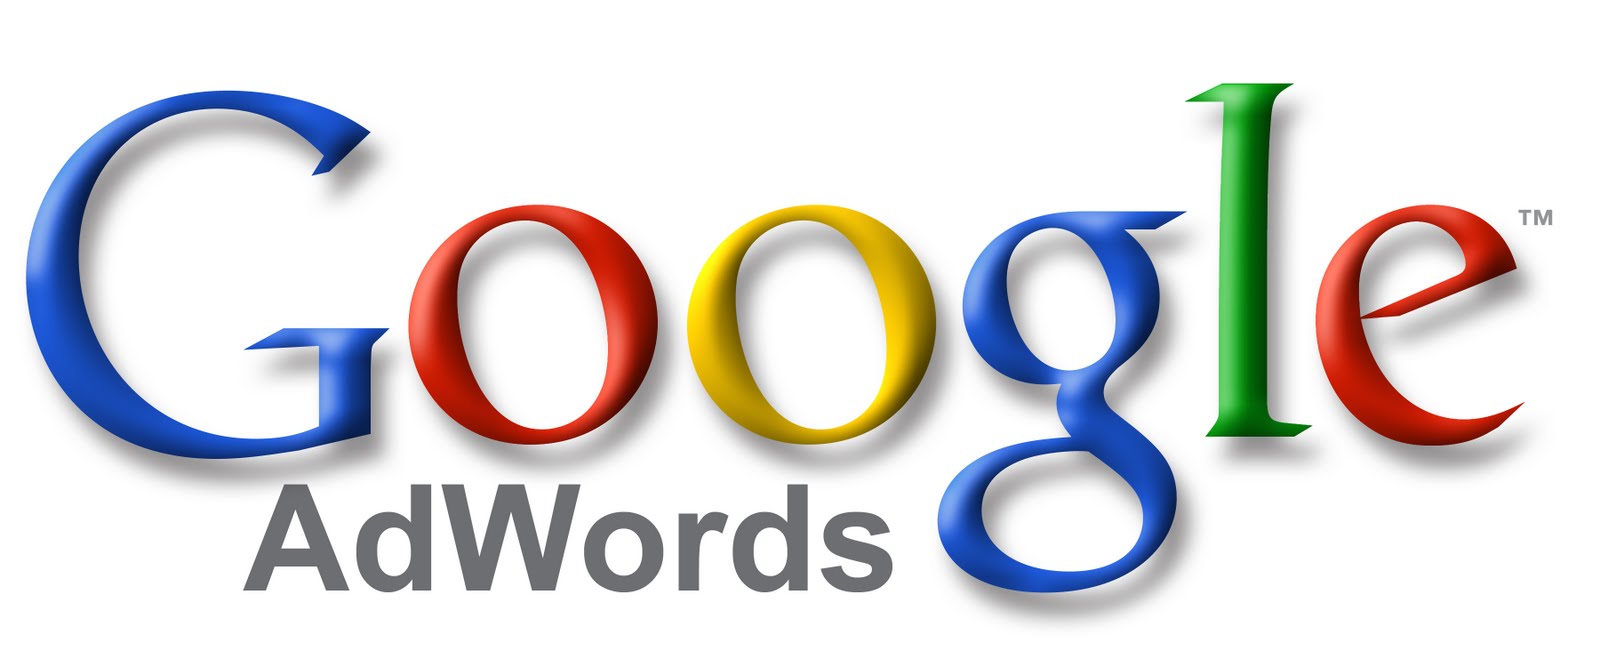 publicidad google adwords 